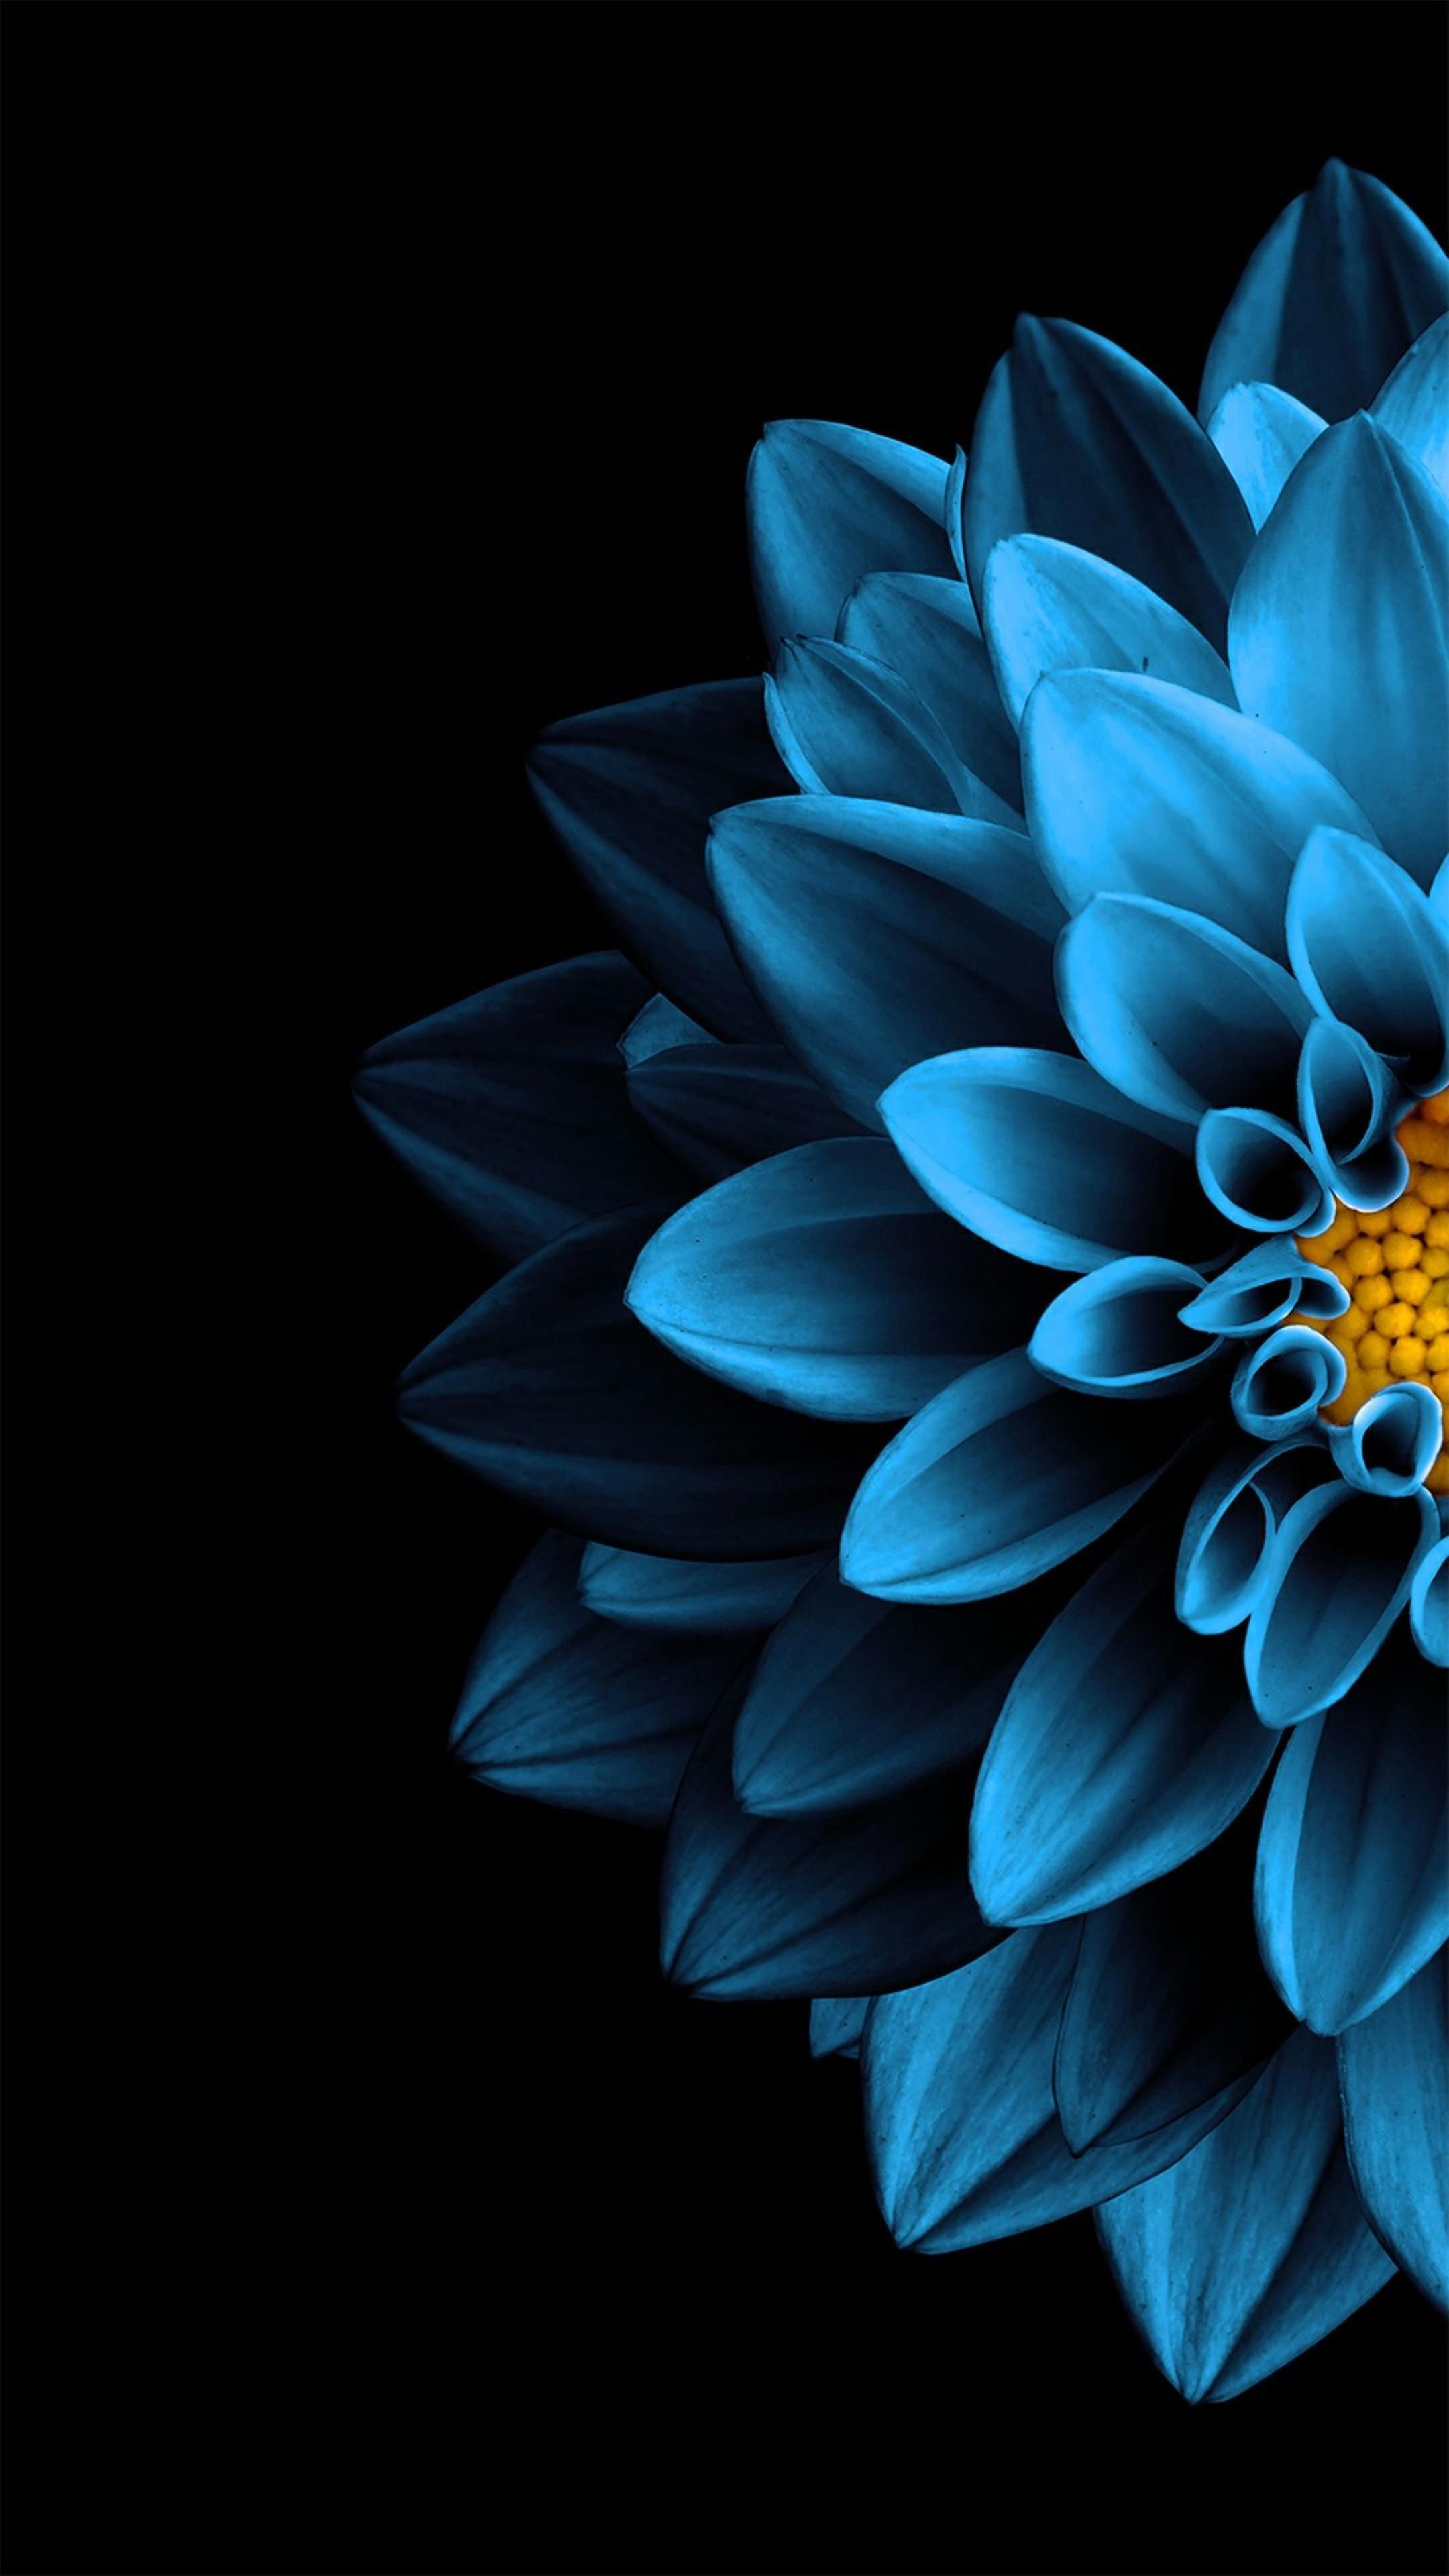 AMOLED Flower Wallpaper. Flower background iphone, Black background wallpaper, Blue wallpaper iphone